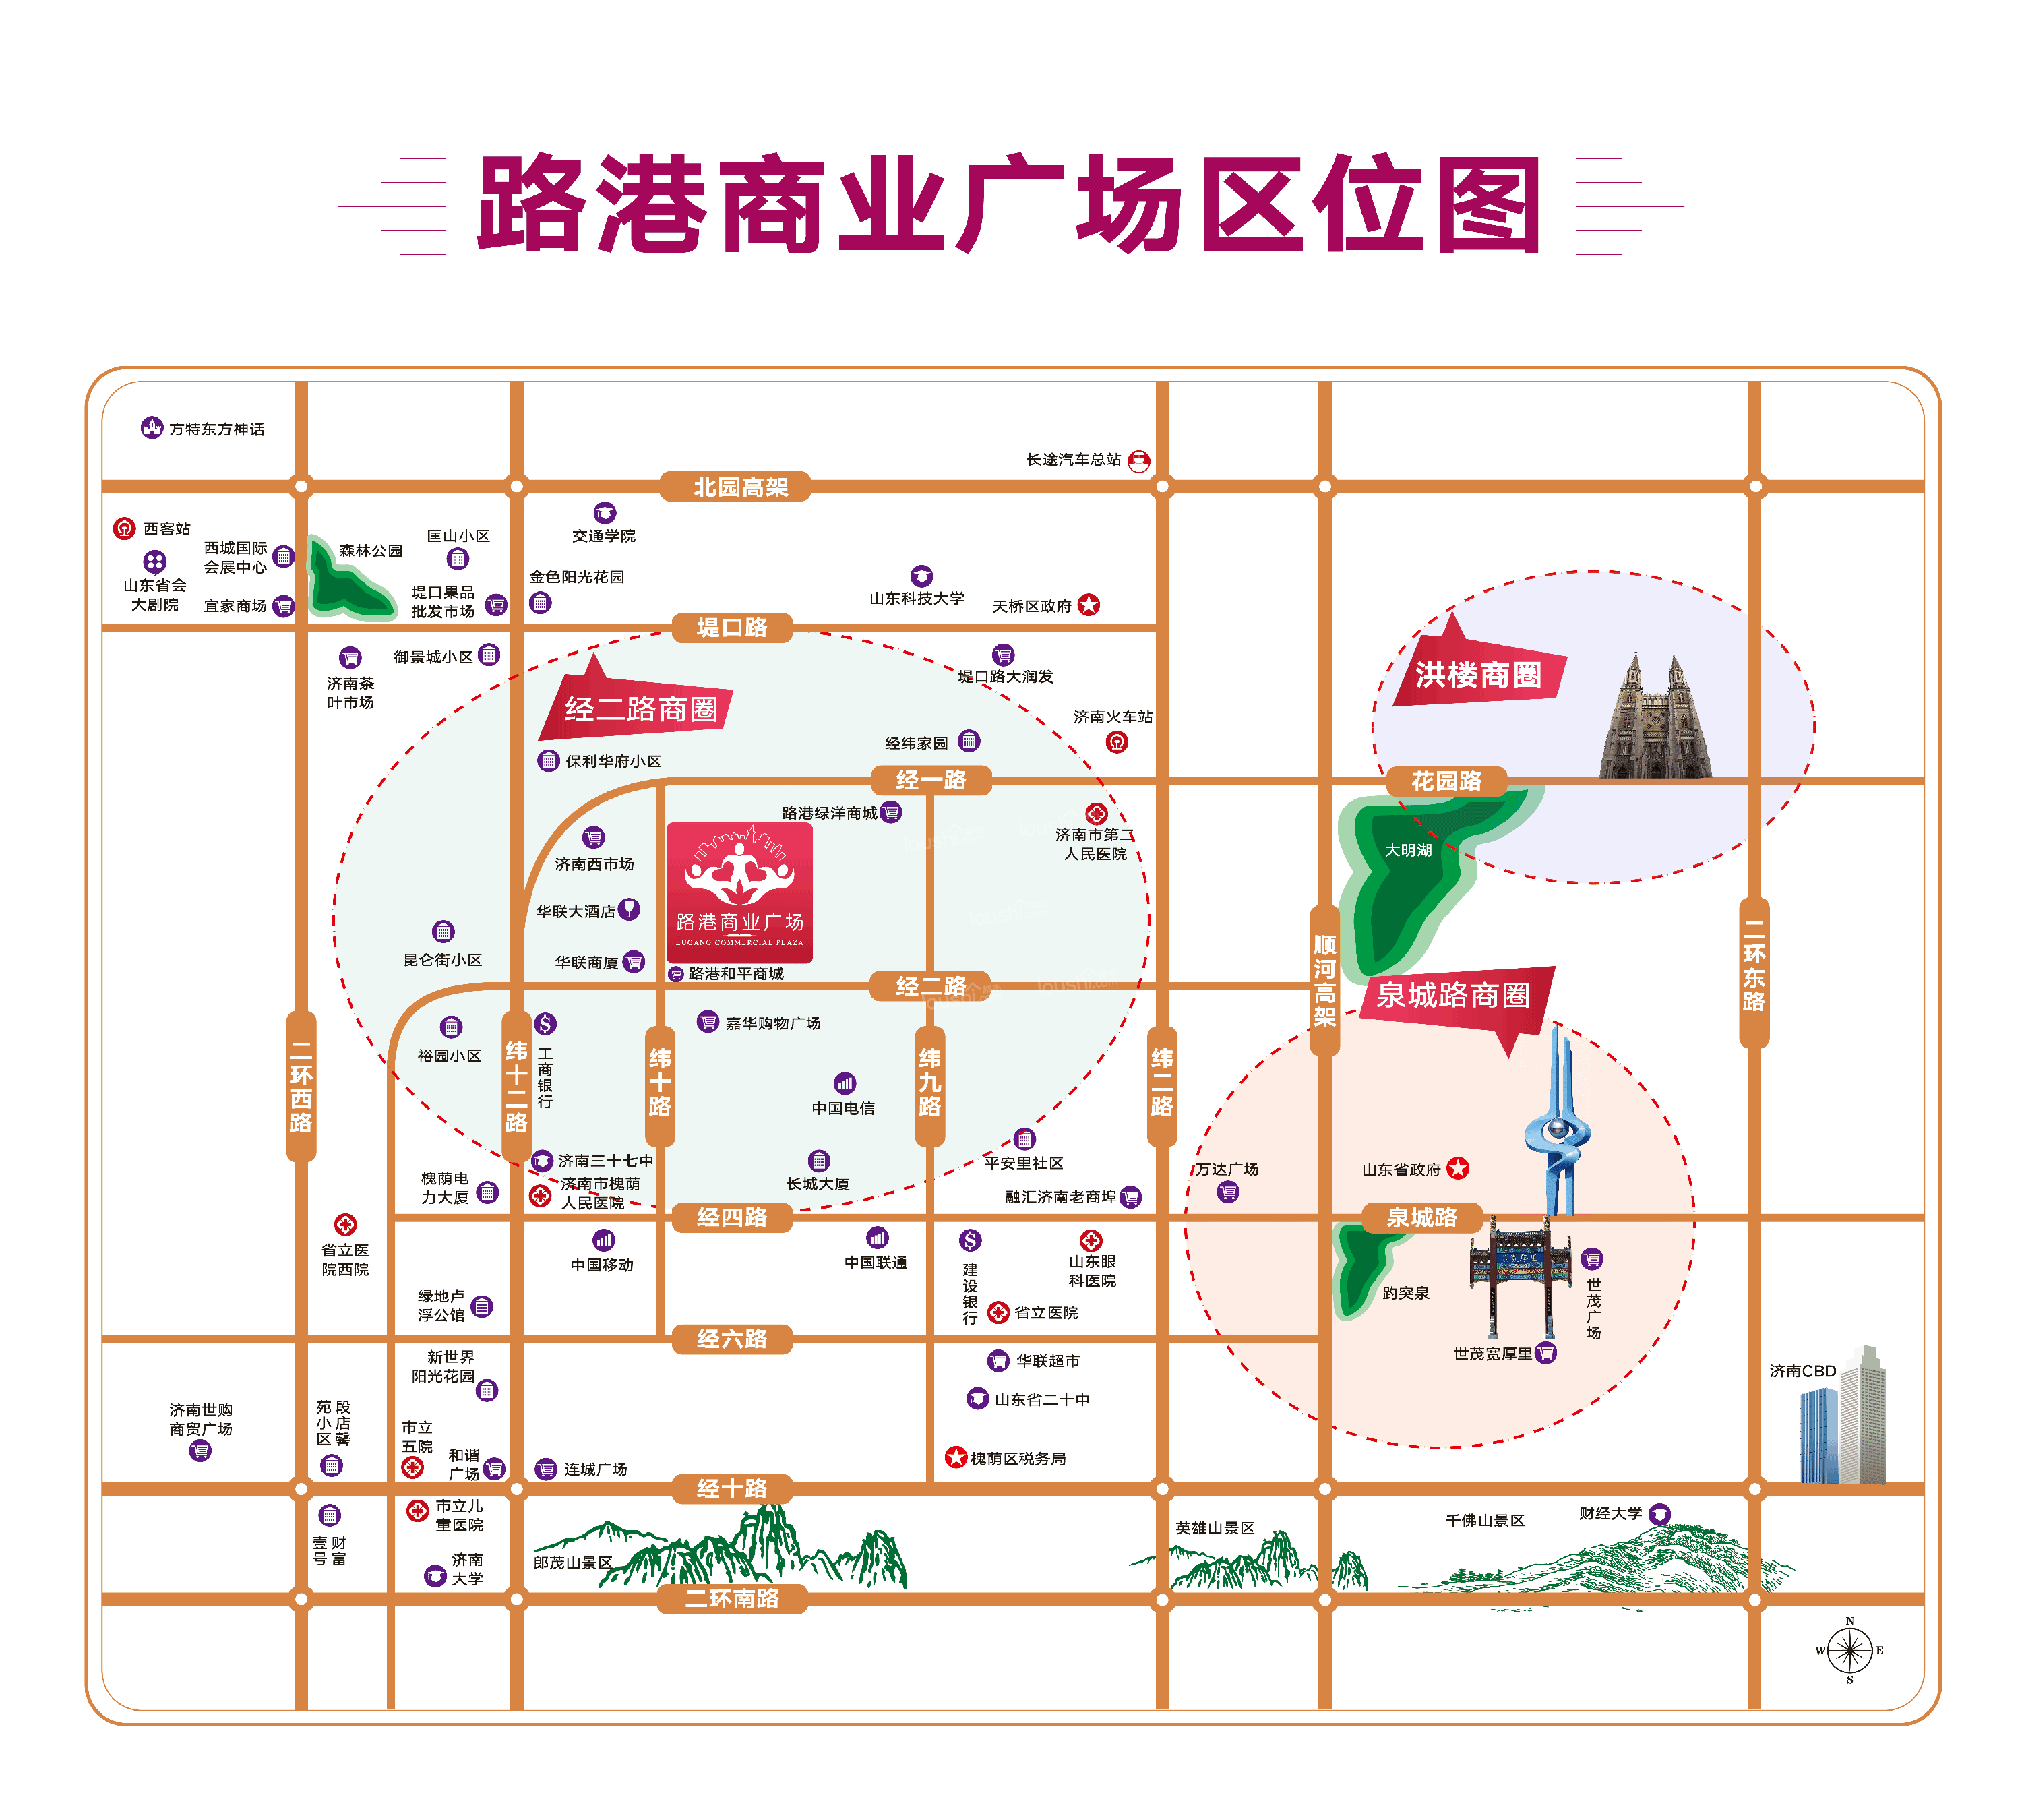 路港商业广场位置图